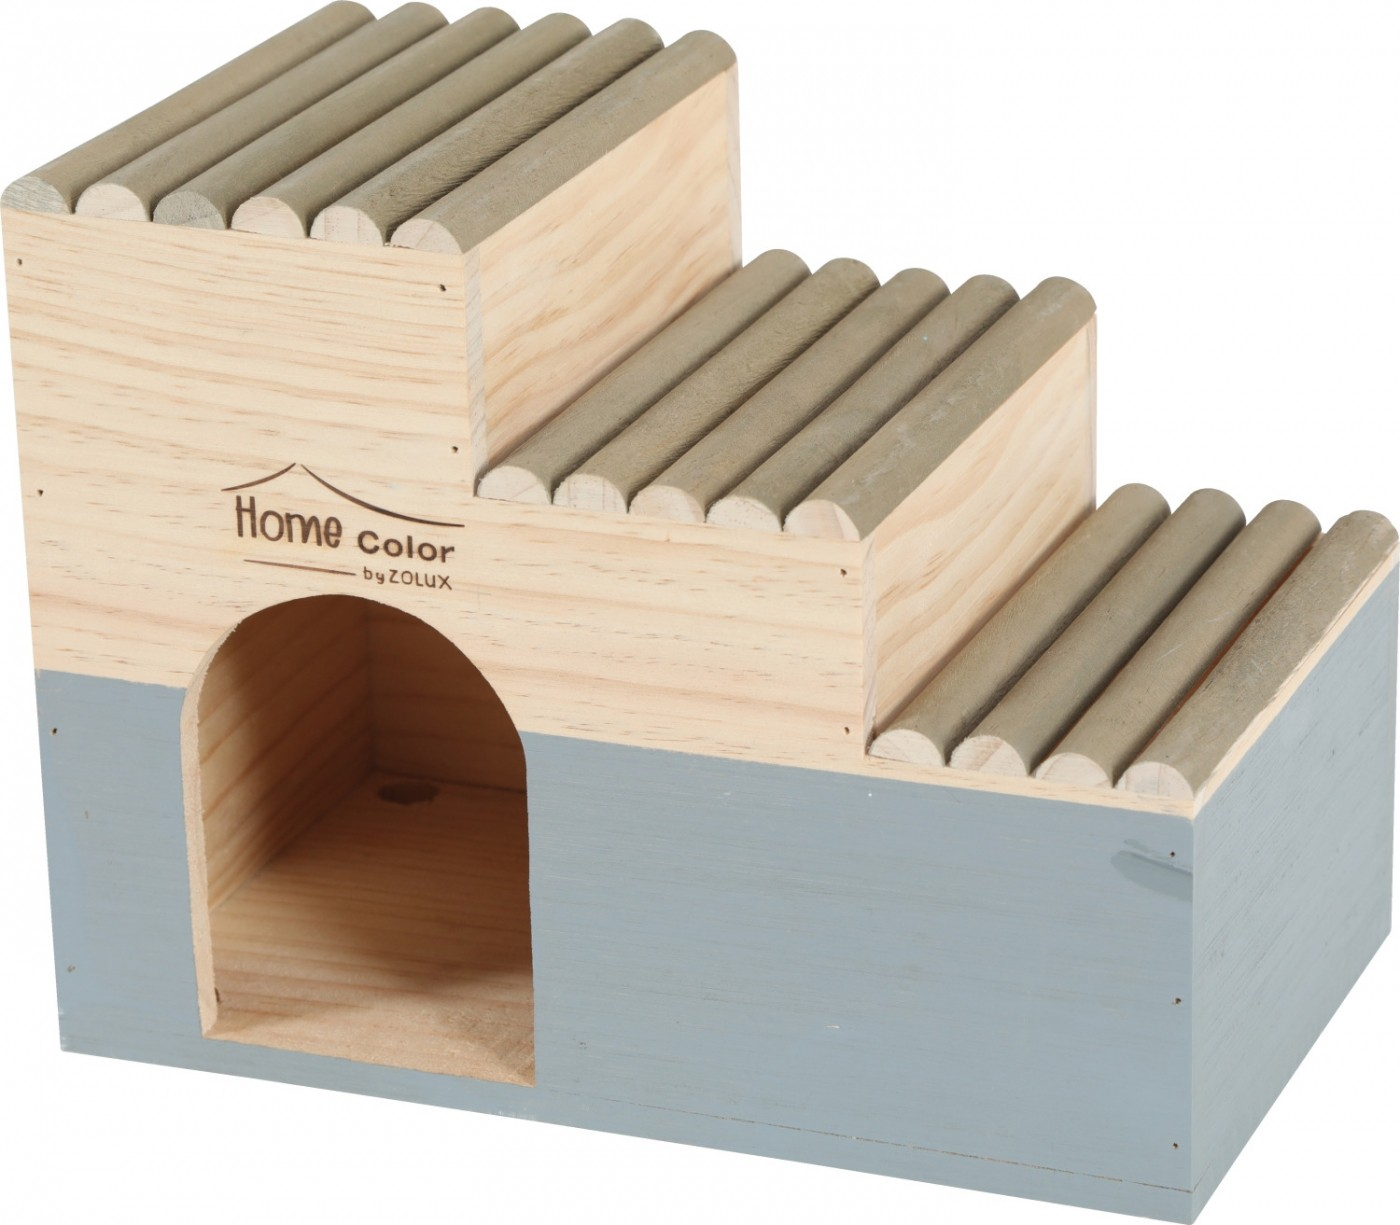 Casa de madera para roedor ola escalera tronco - Home color